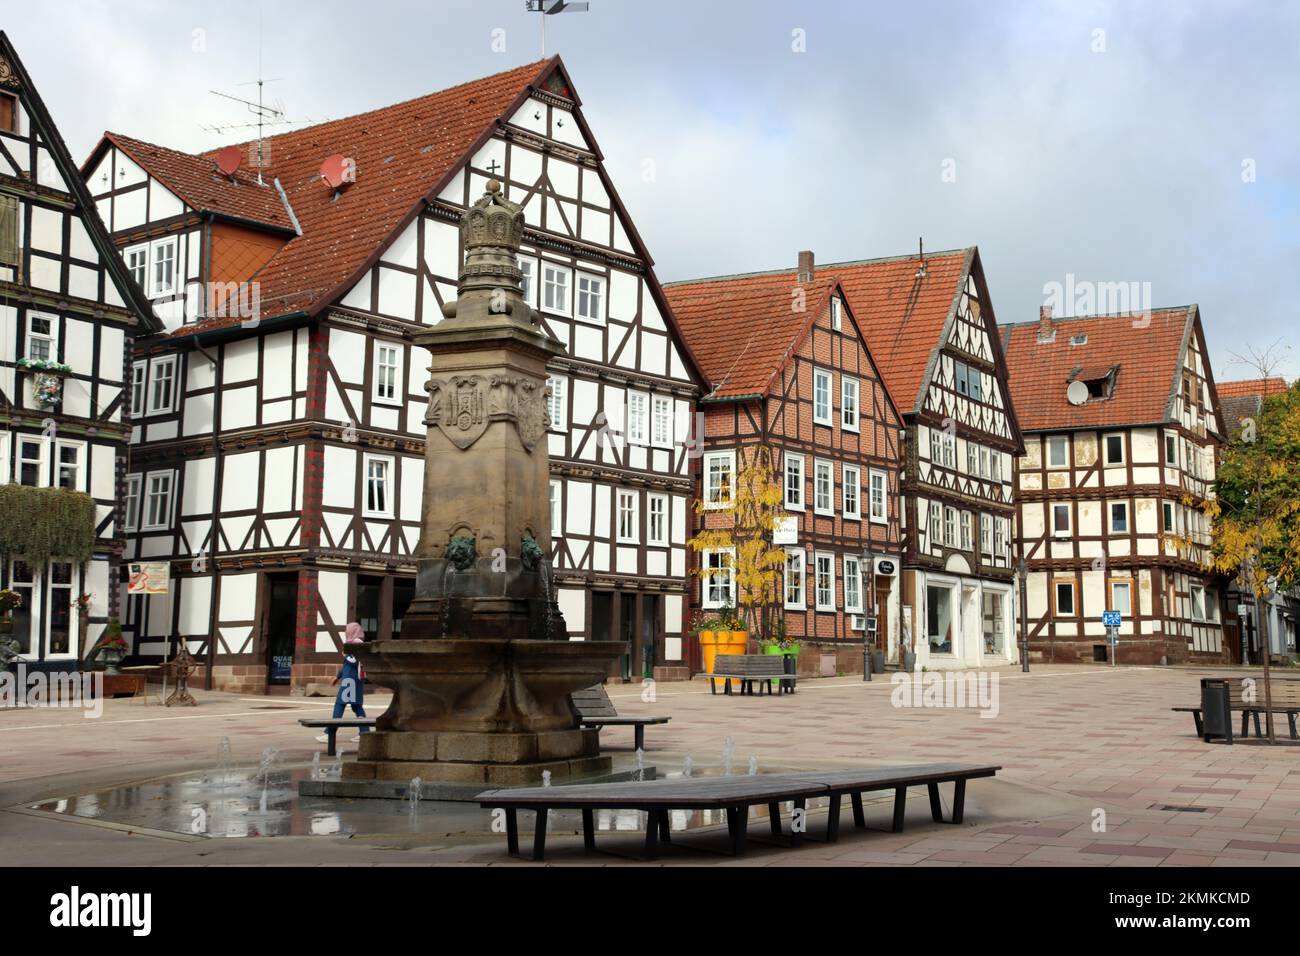 Denkmal und Brunnen auf dem Marktplatz in der historischen Altstadt, Hessen, Deutschland, Hofgeismar Stock Photo